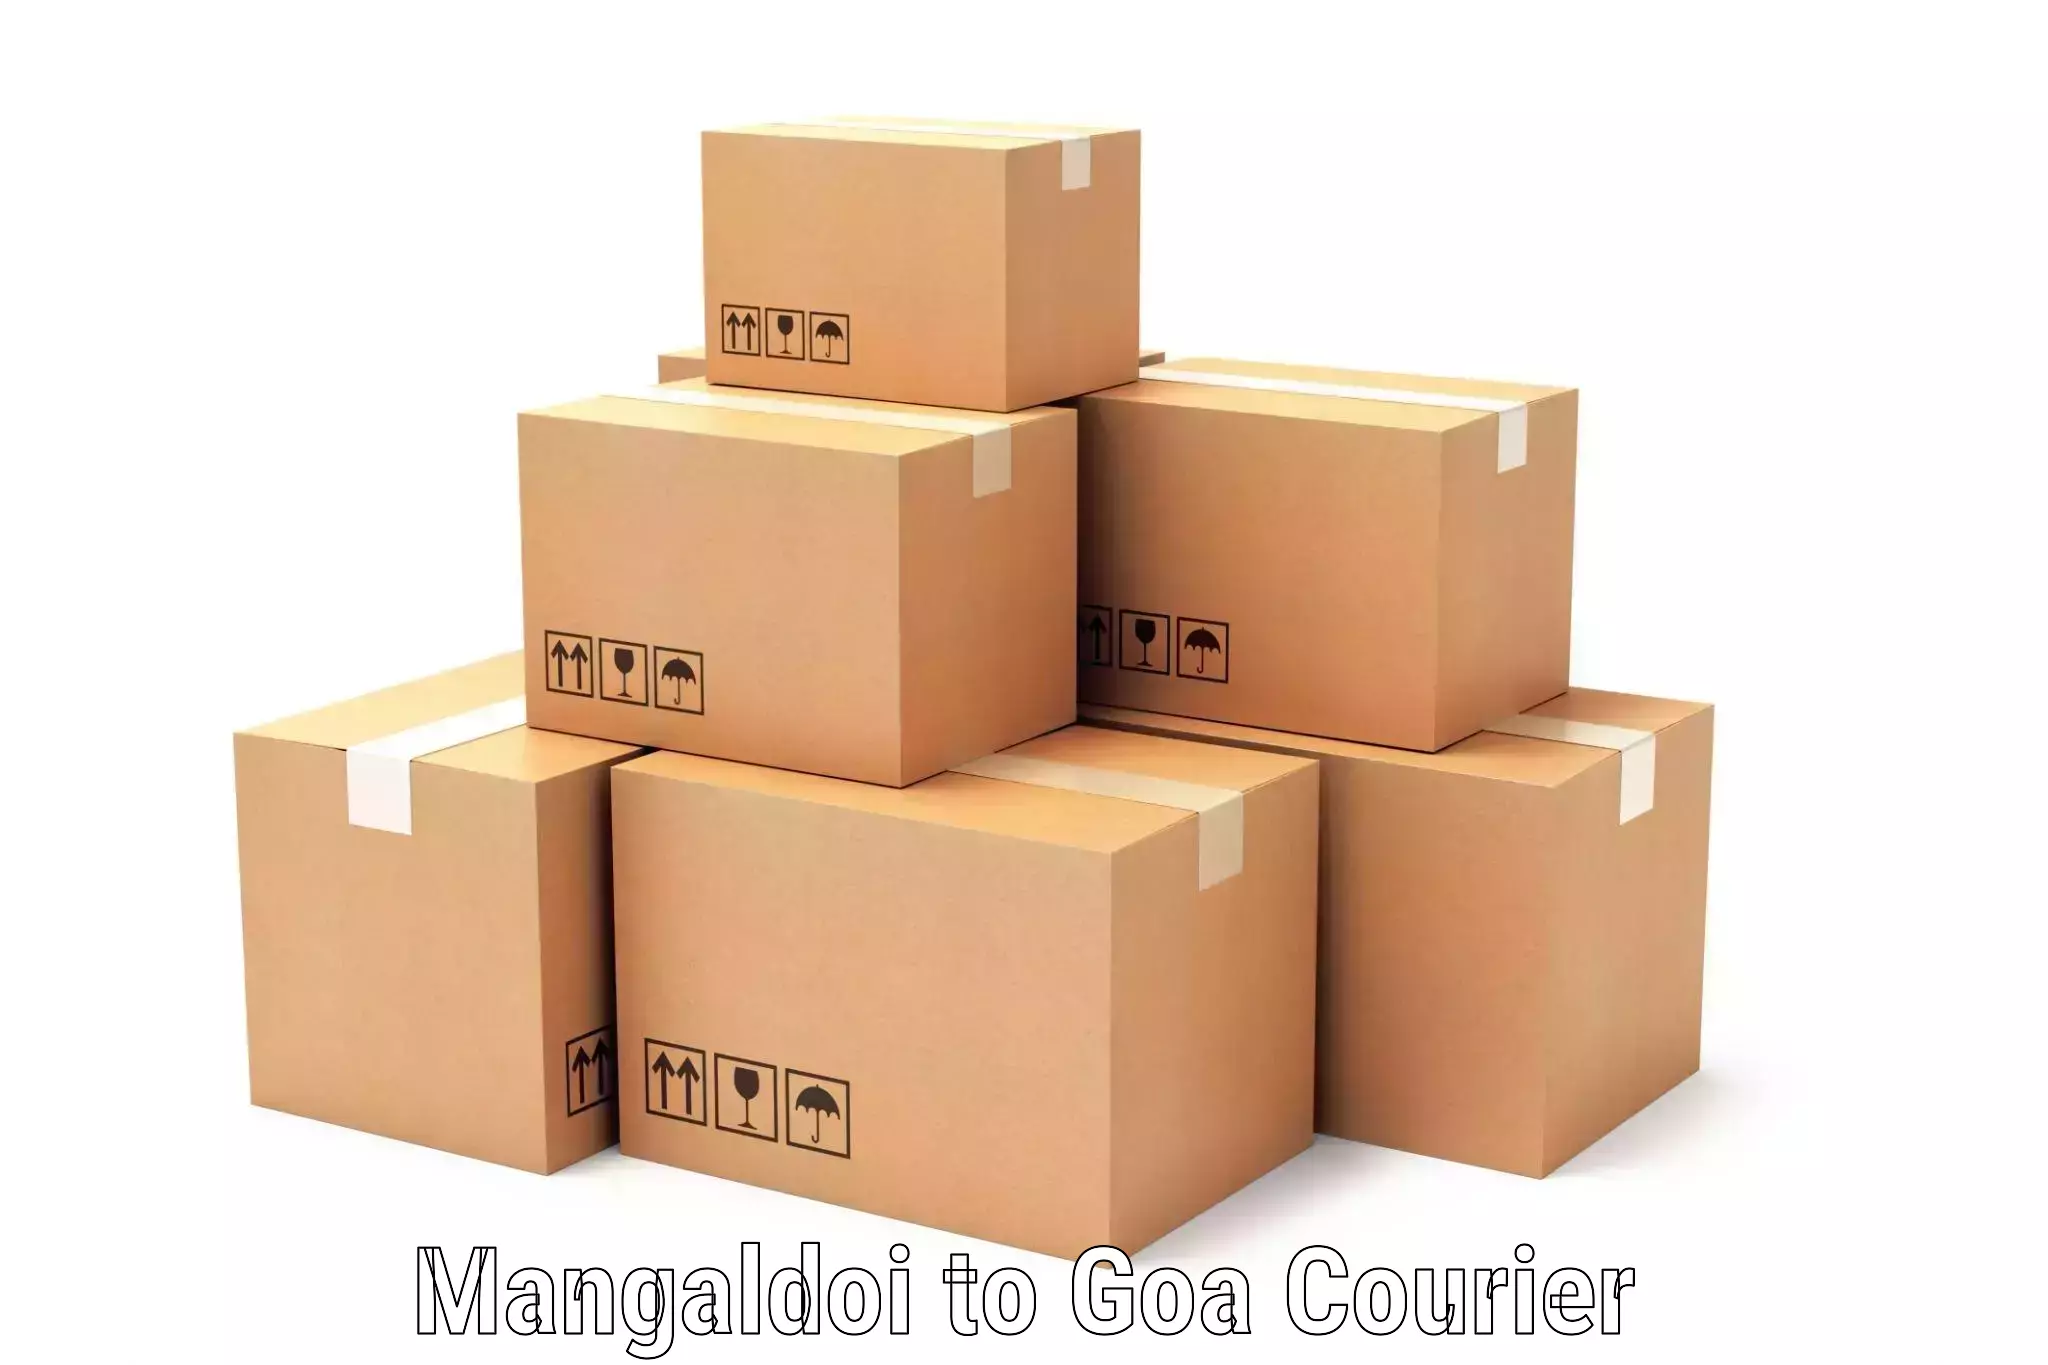 Supply chain delivery Mangaldoi to Panaji